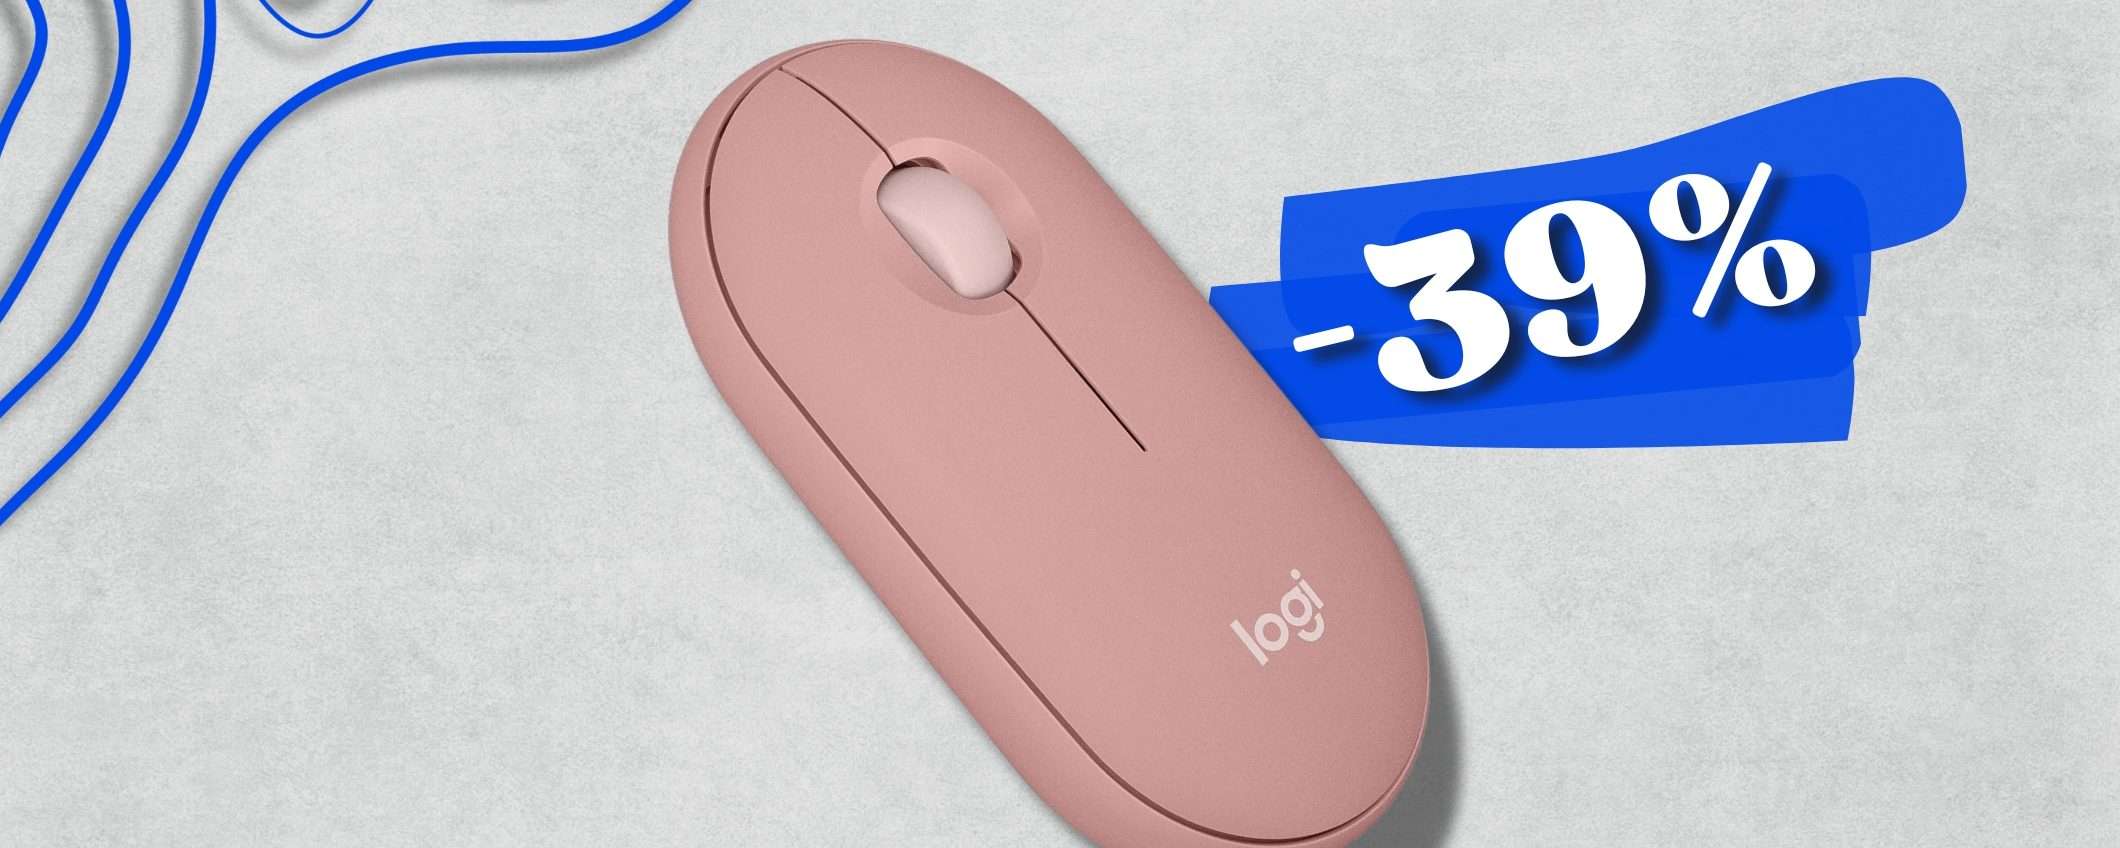 Uno dei migliori Mouse Logitech a un prezzo BOMBA: su Amazon al -39%